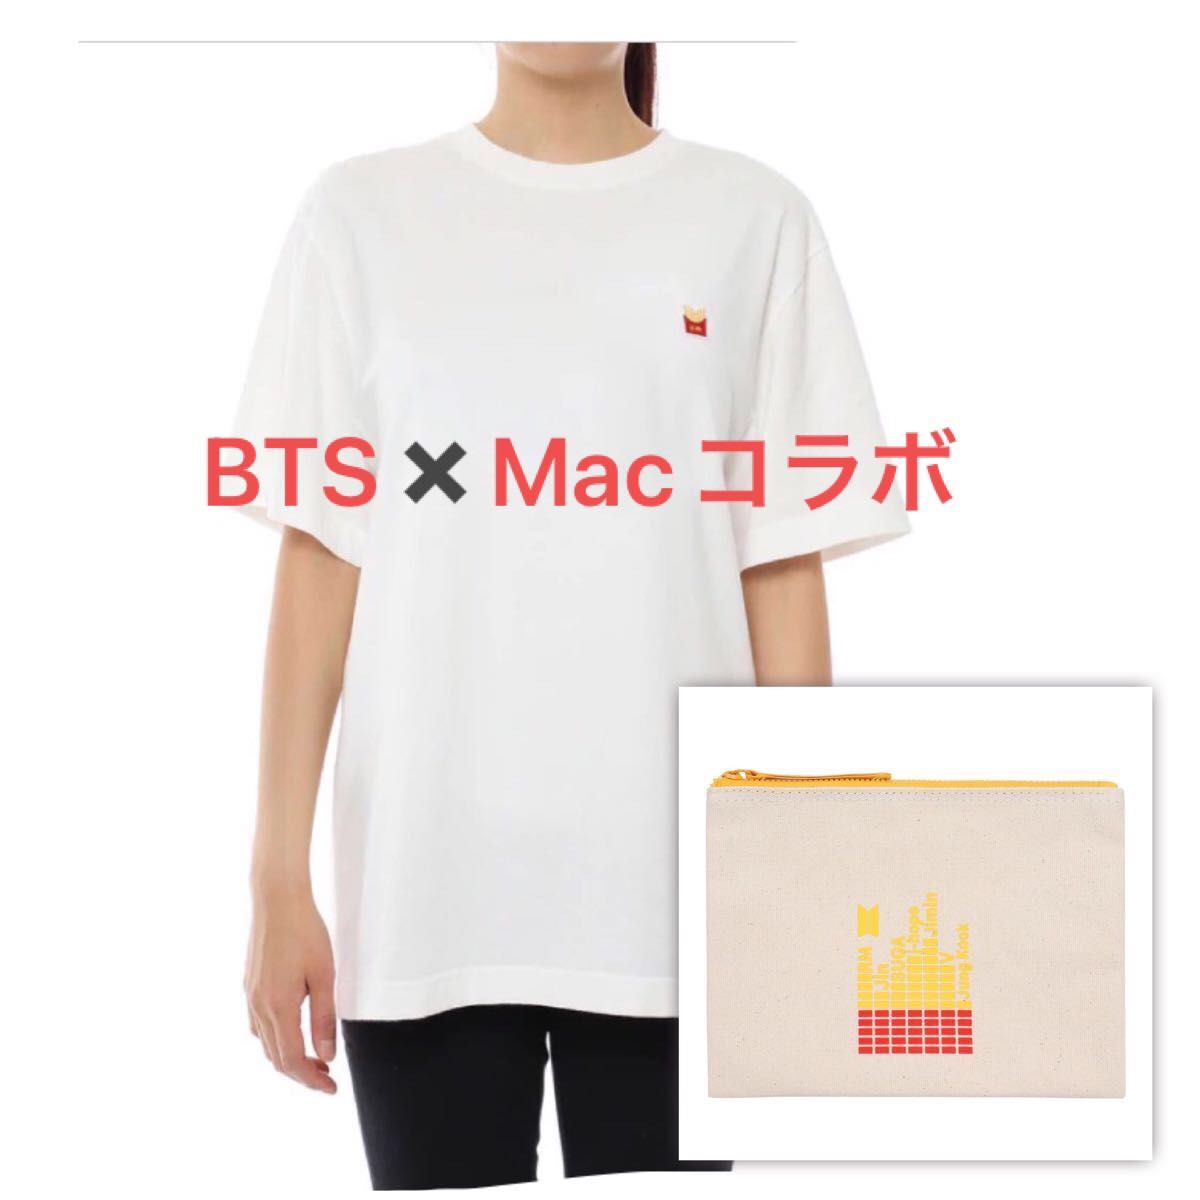 BTS マック コラボ Tシャツ ホワイト Mサイズ マクドナルド コラボ